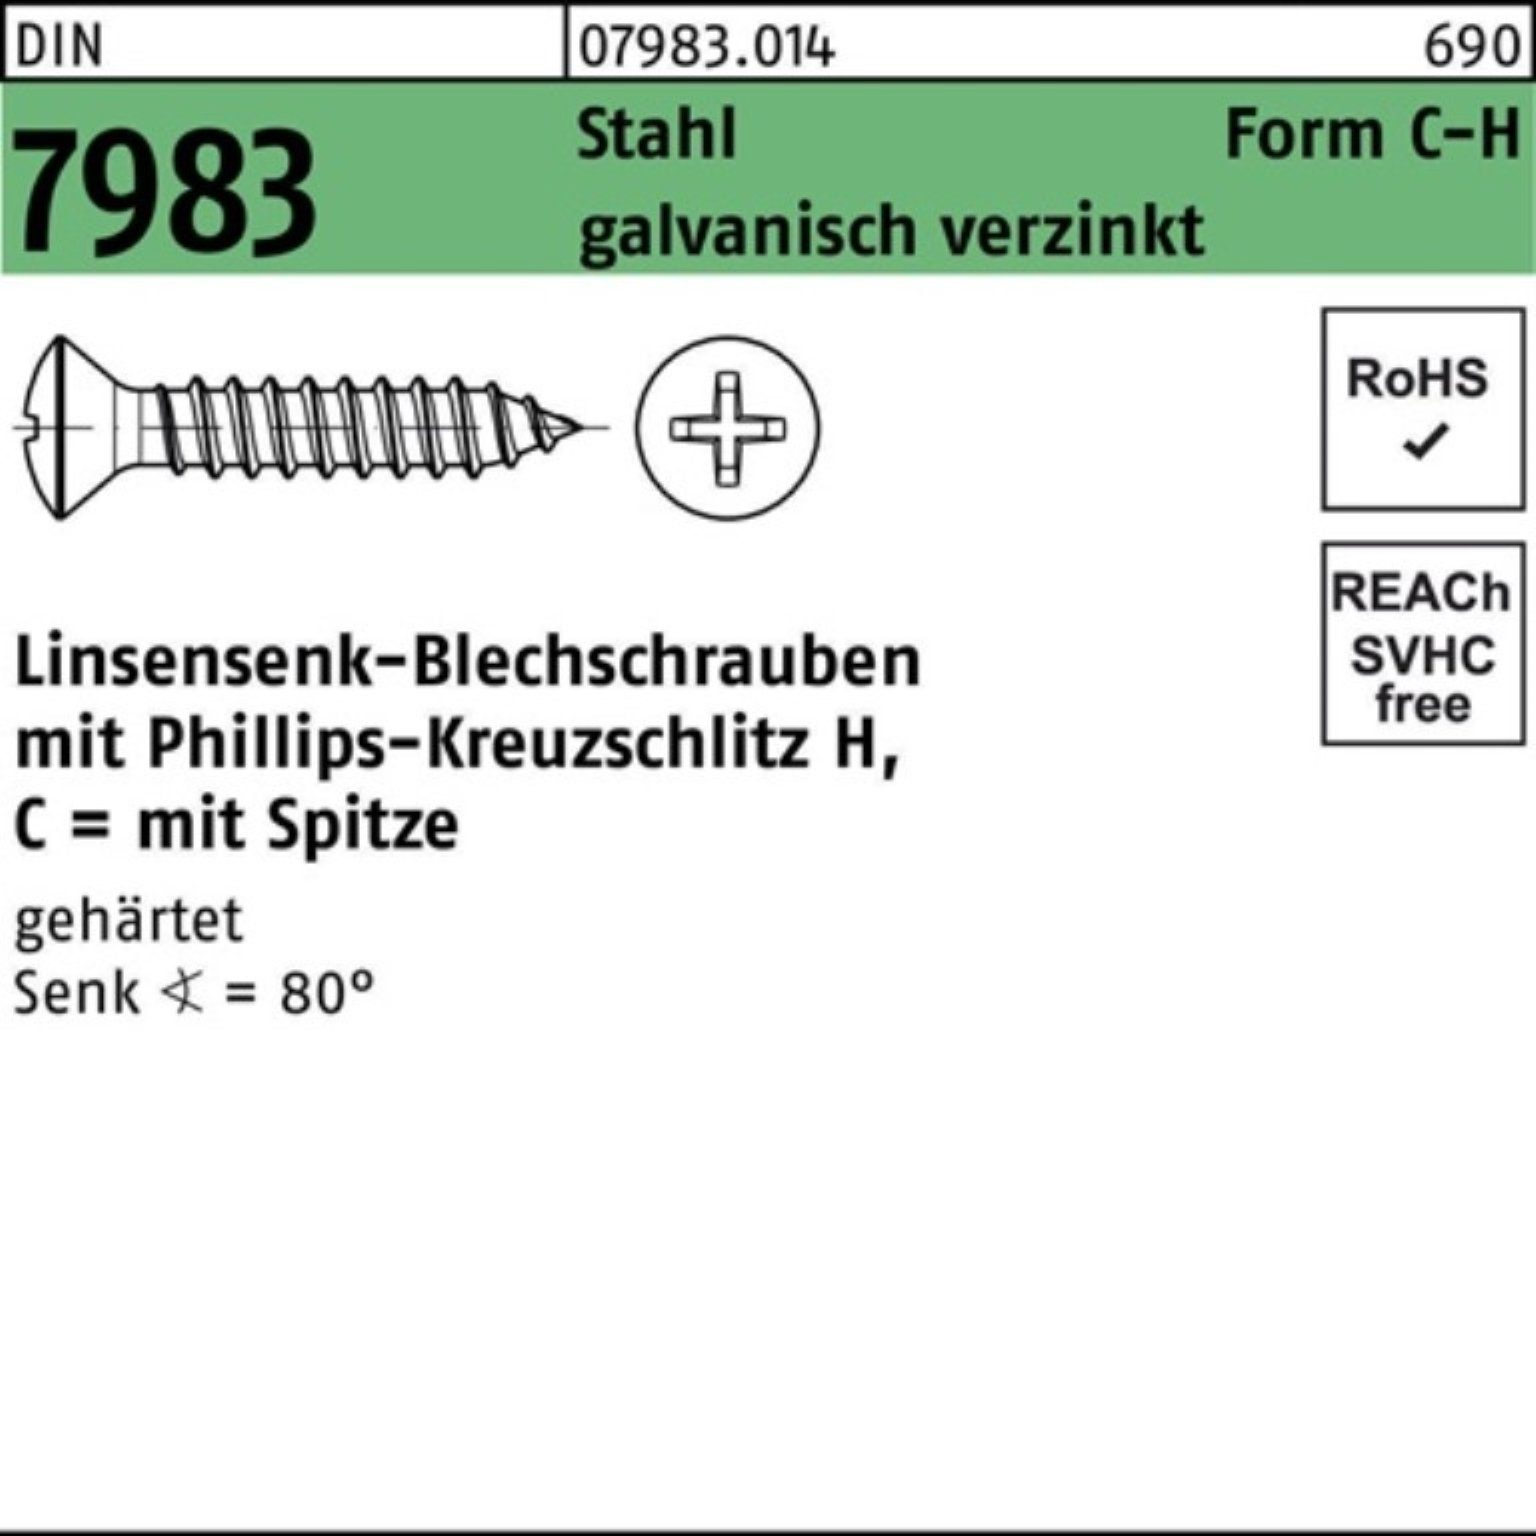 Reyher Schraube 100er Stahl Linsensenkblechschraube Pack PH C DIN gehär 6,3x32-H 7983